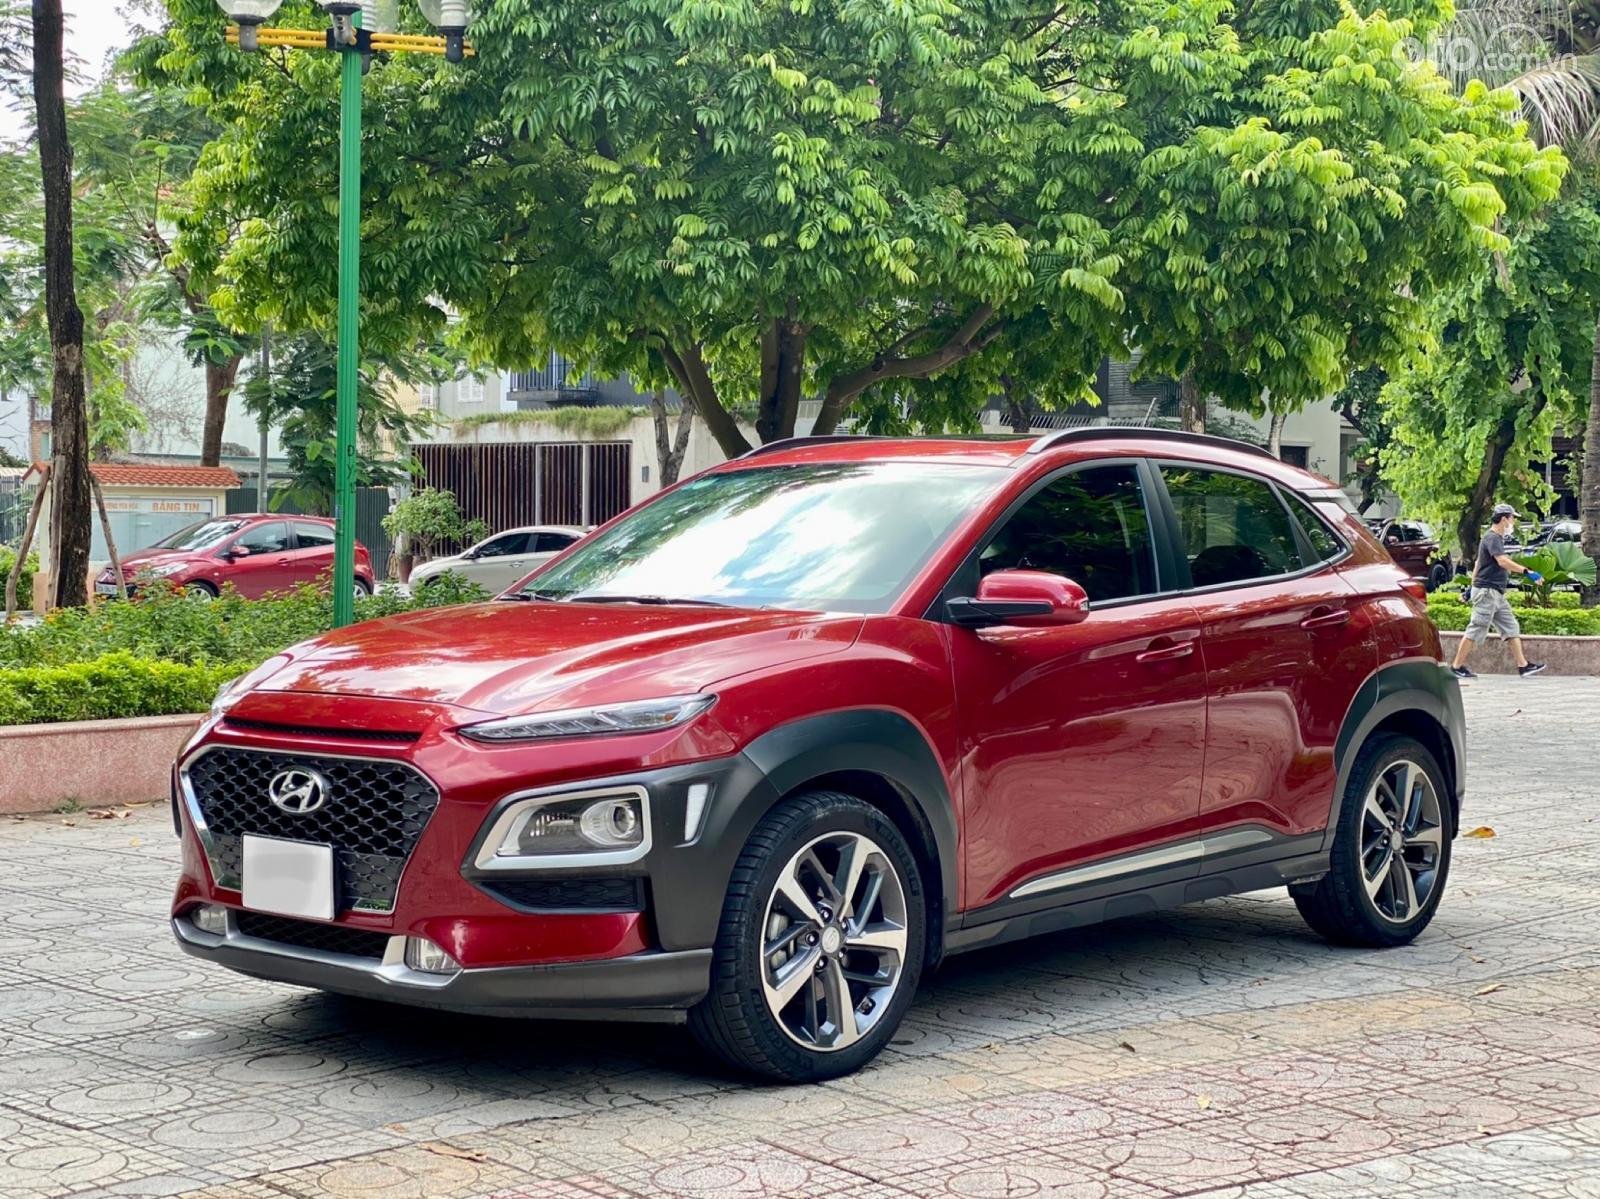 Đánh giá Hyundai Kona 2018 cũ: Mạnh mẽ, tiện nghi nhưng không thực sự thoải mái.